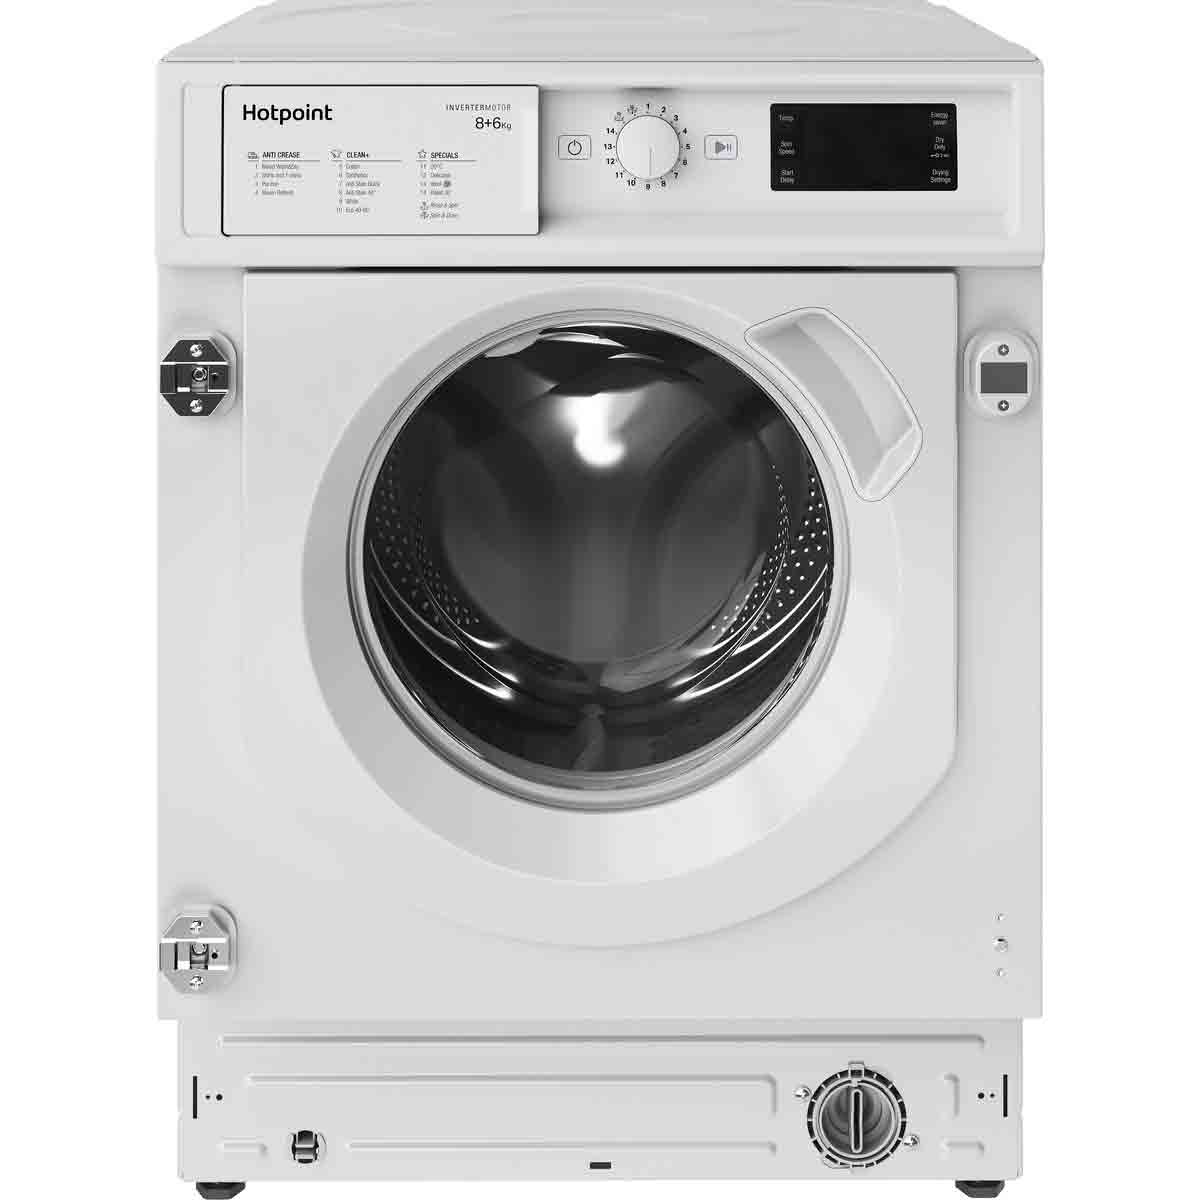 Hotpoint BI WDHG 861484 UK 8Kg Washer Dryer - White